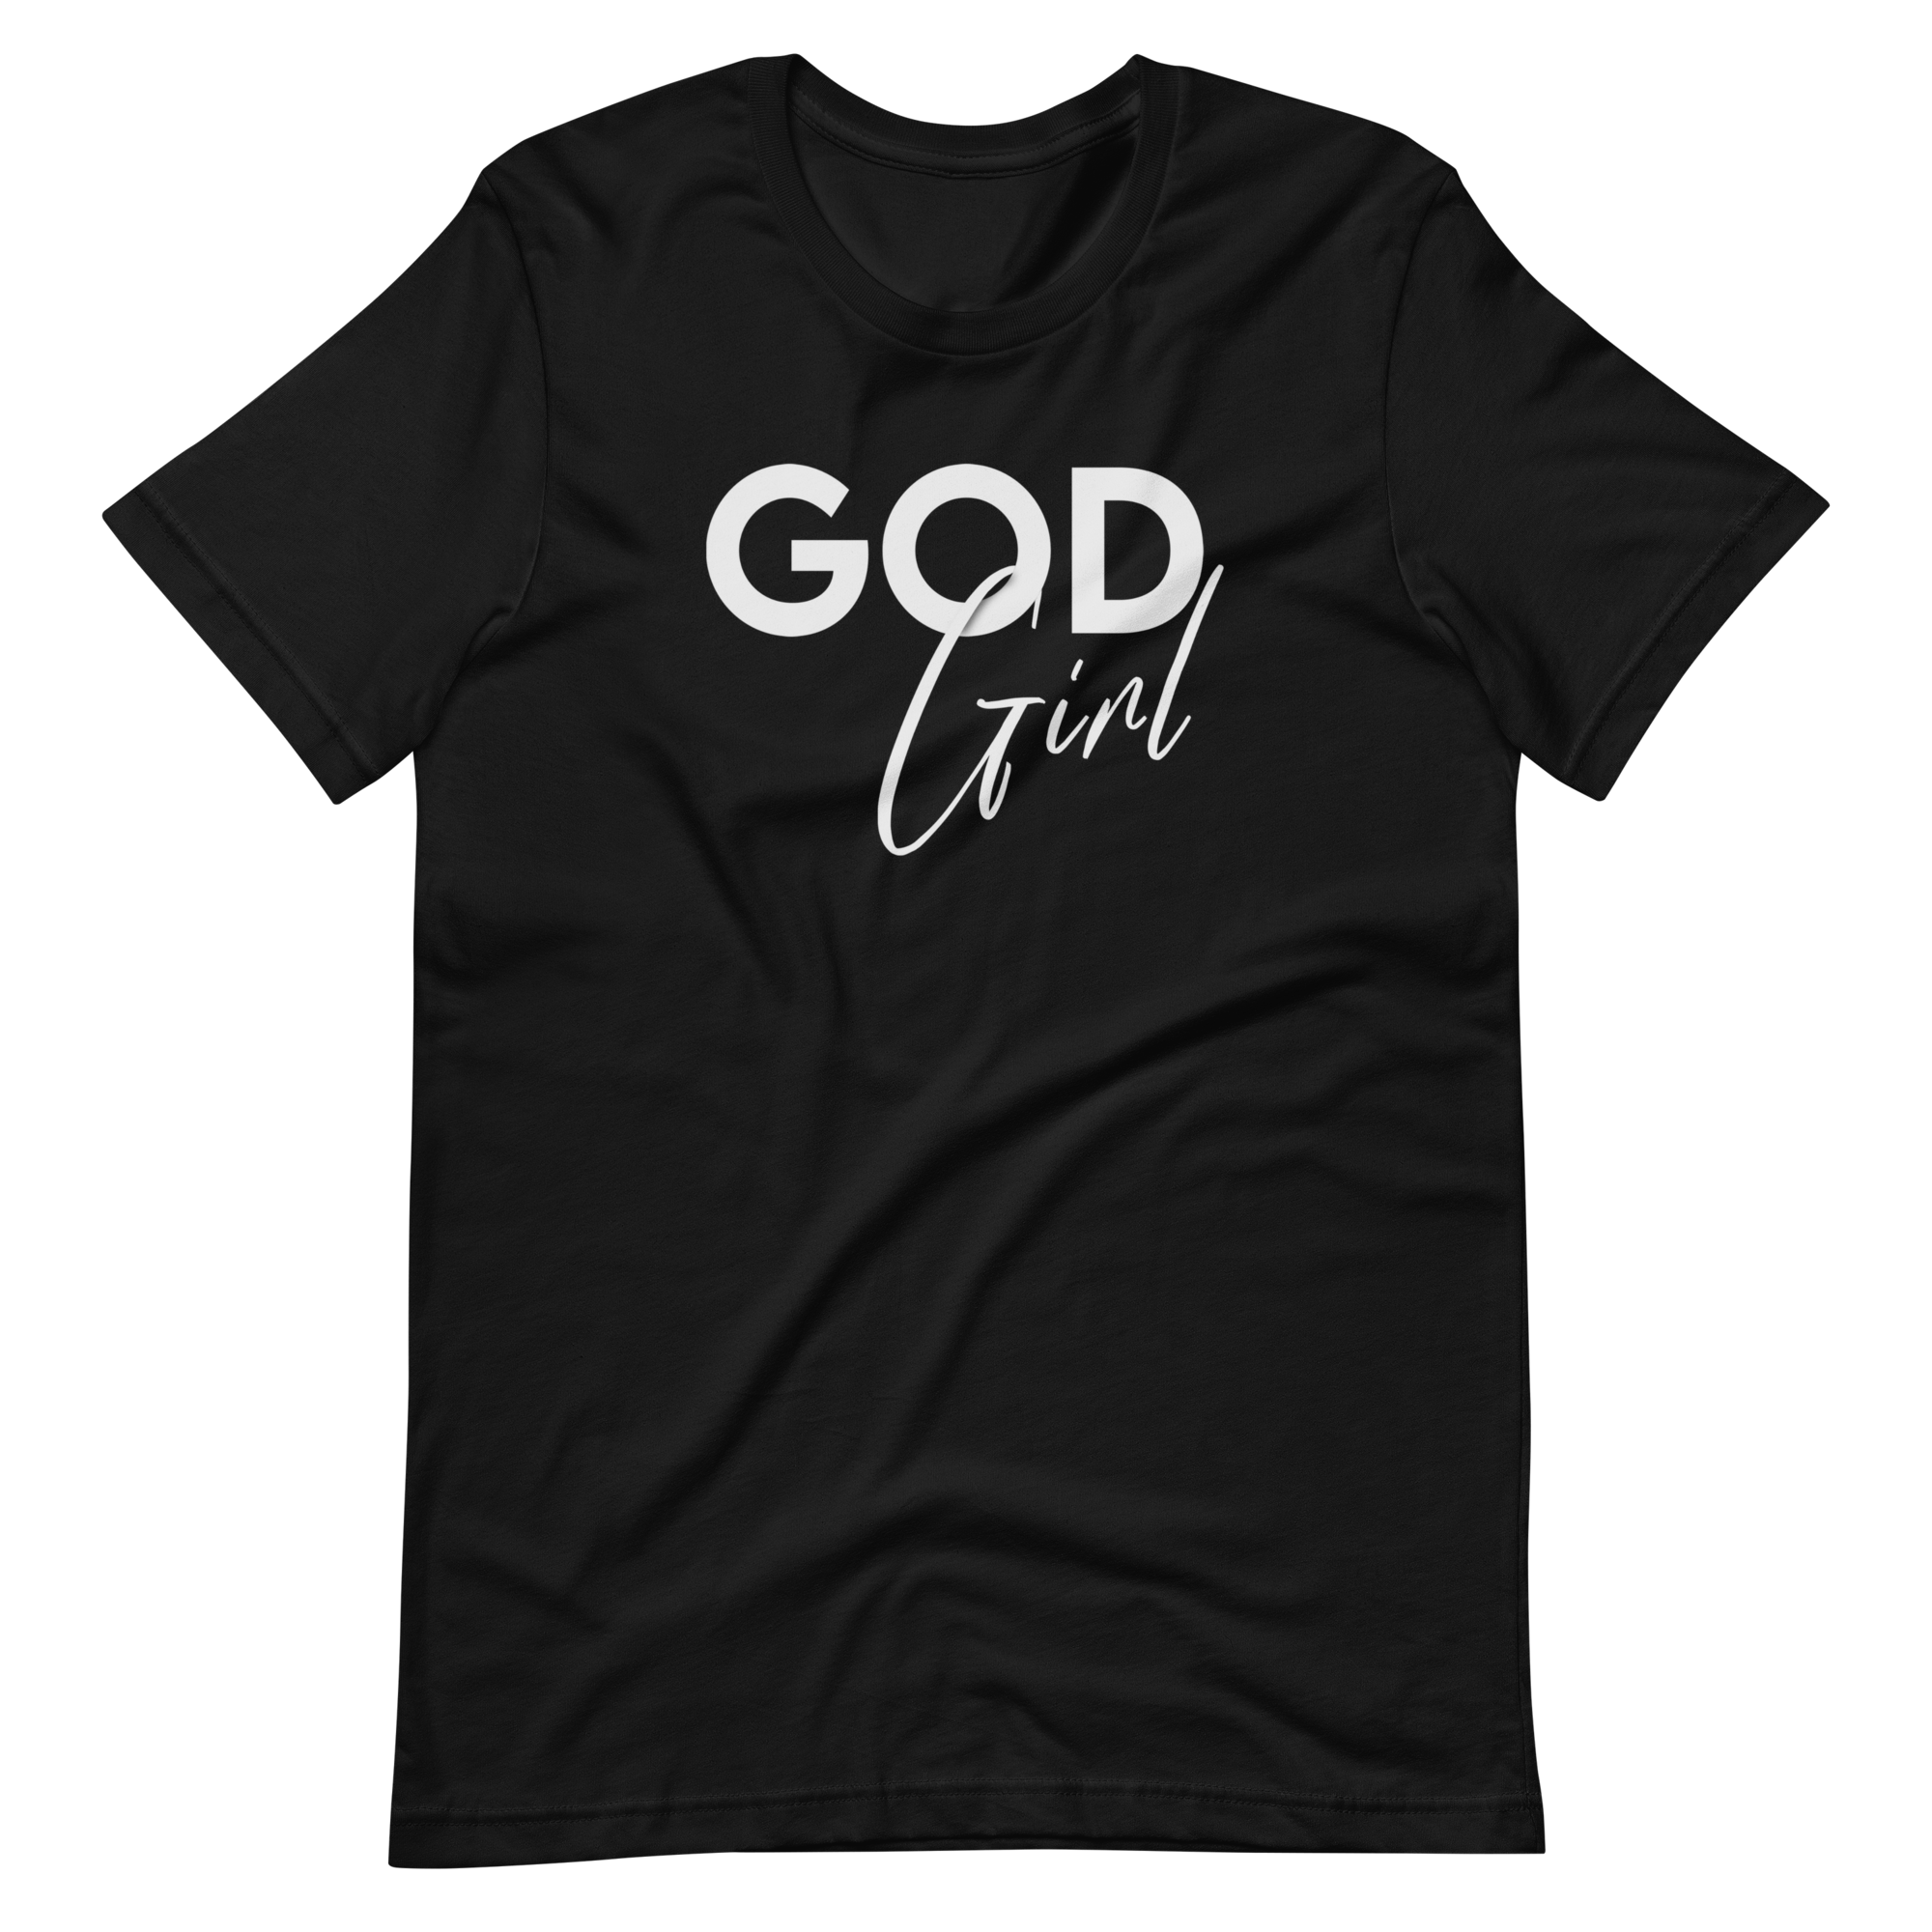 God Girl T-shirt